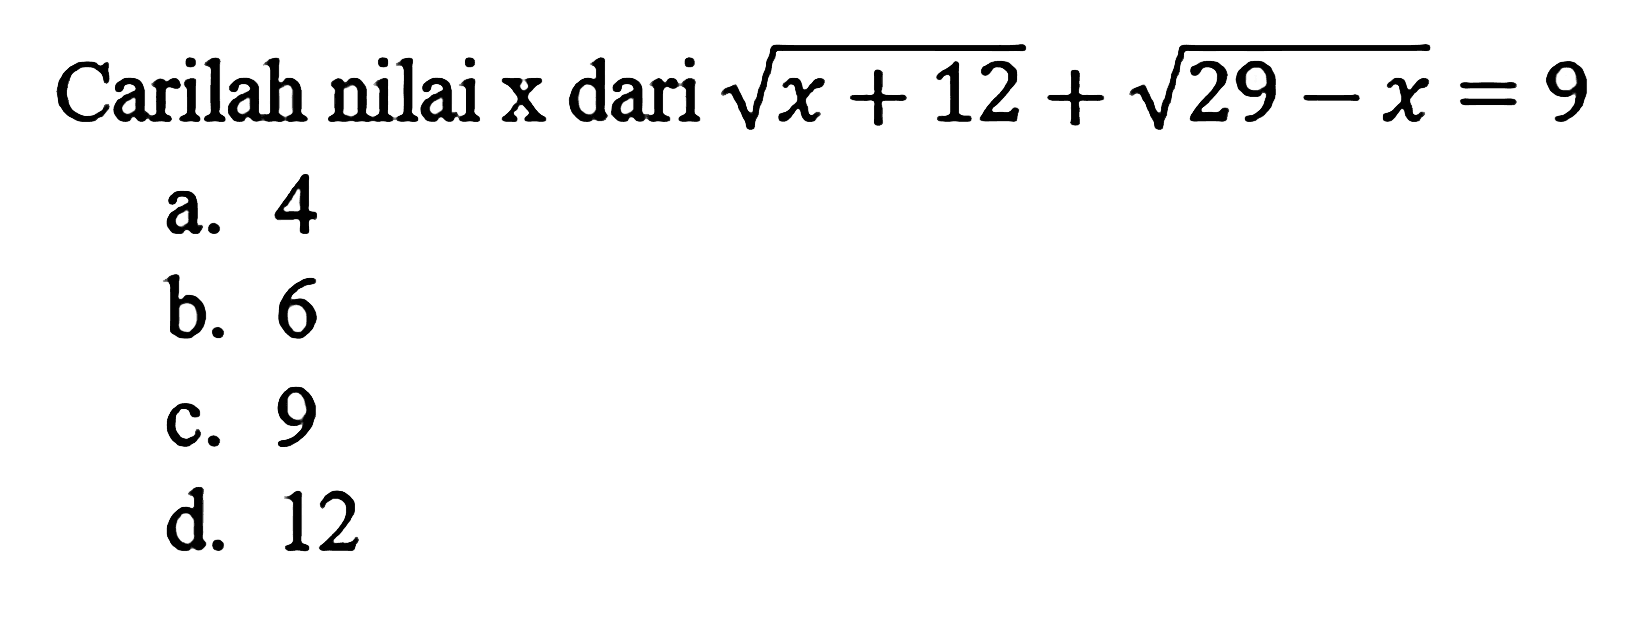 Carilah nilai x dari akar(x+12) + akar(29-x)=9